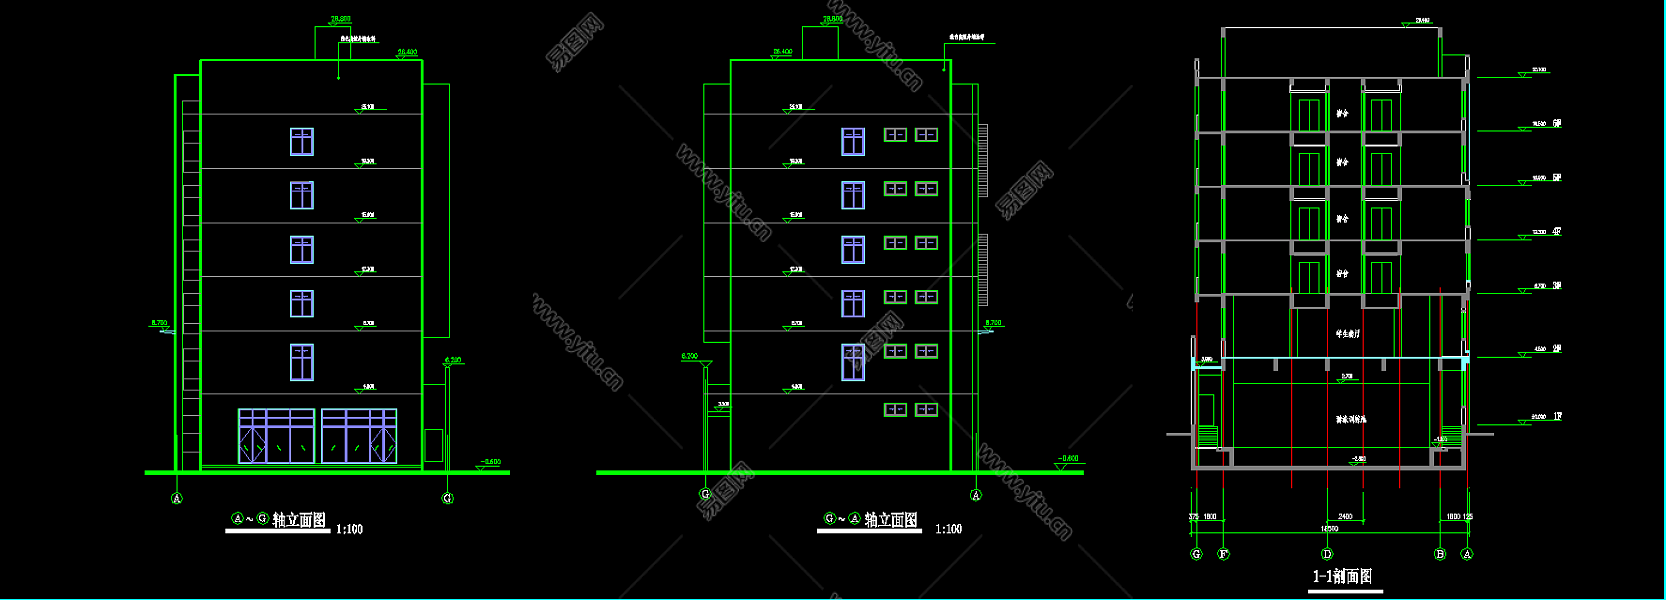 建筑施工图纸下载建筑施工图纸下载什么软件  第2张